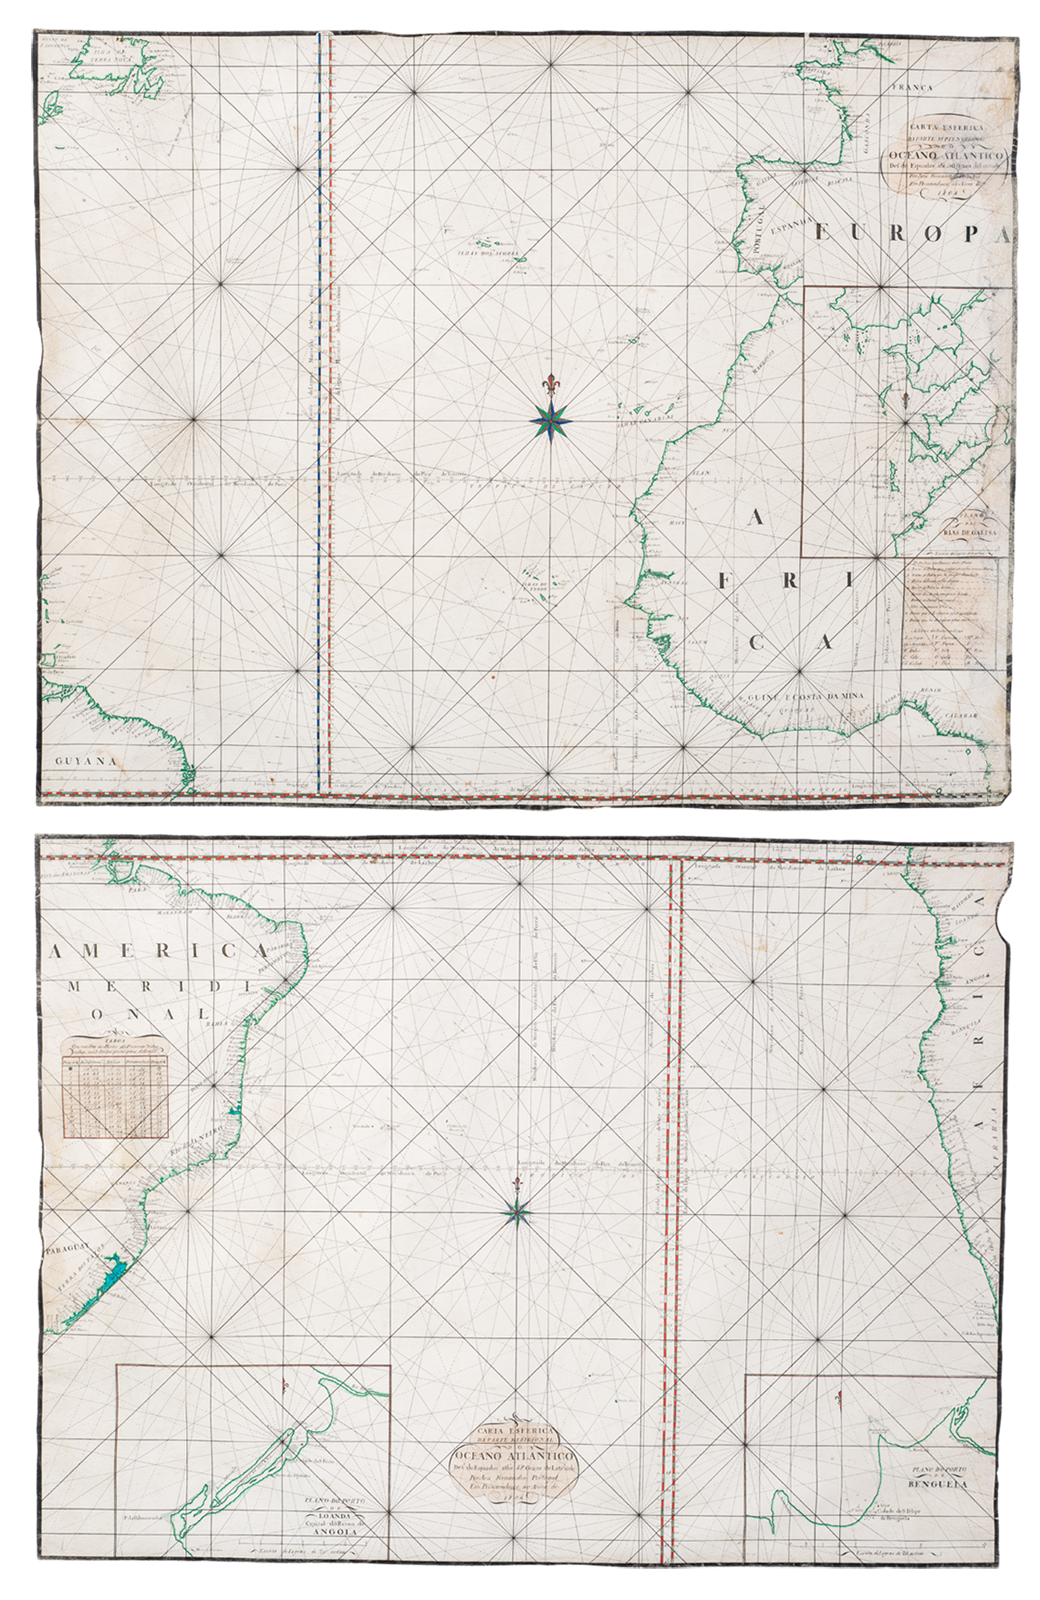 Portulanos - Cartas esféricas do Oceano Atlântico